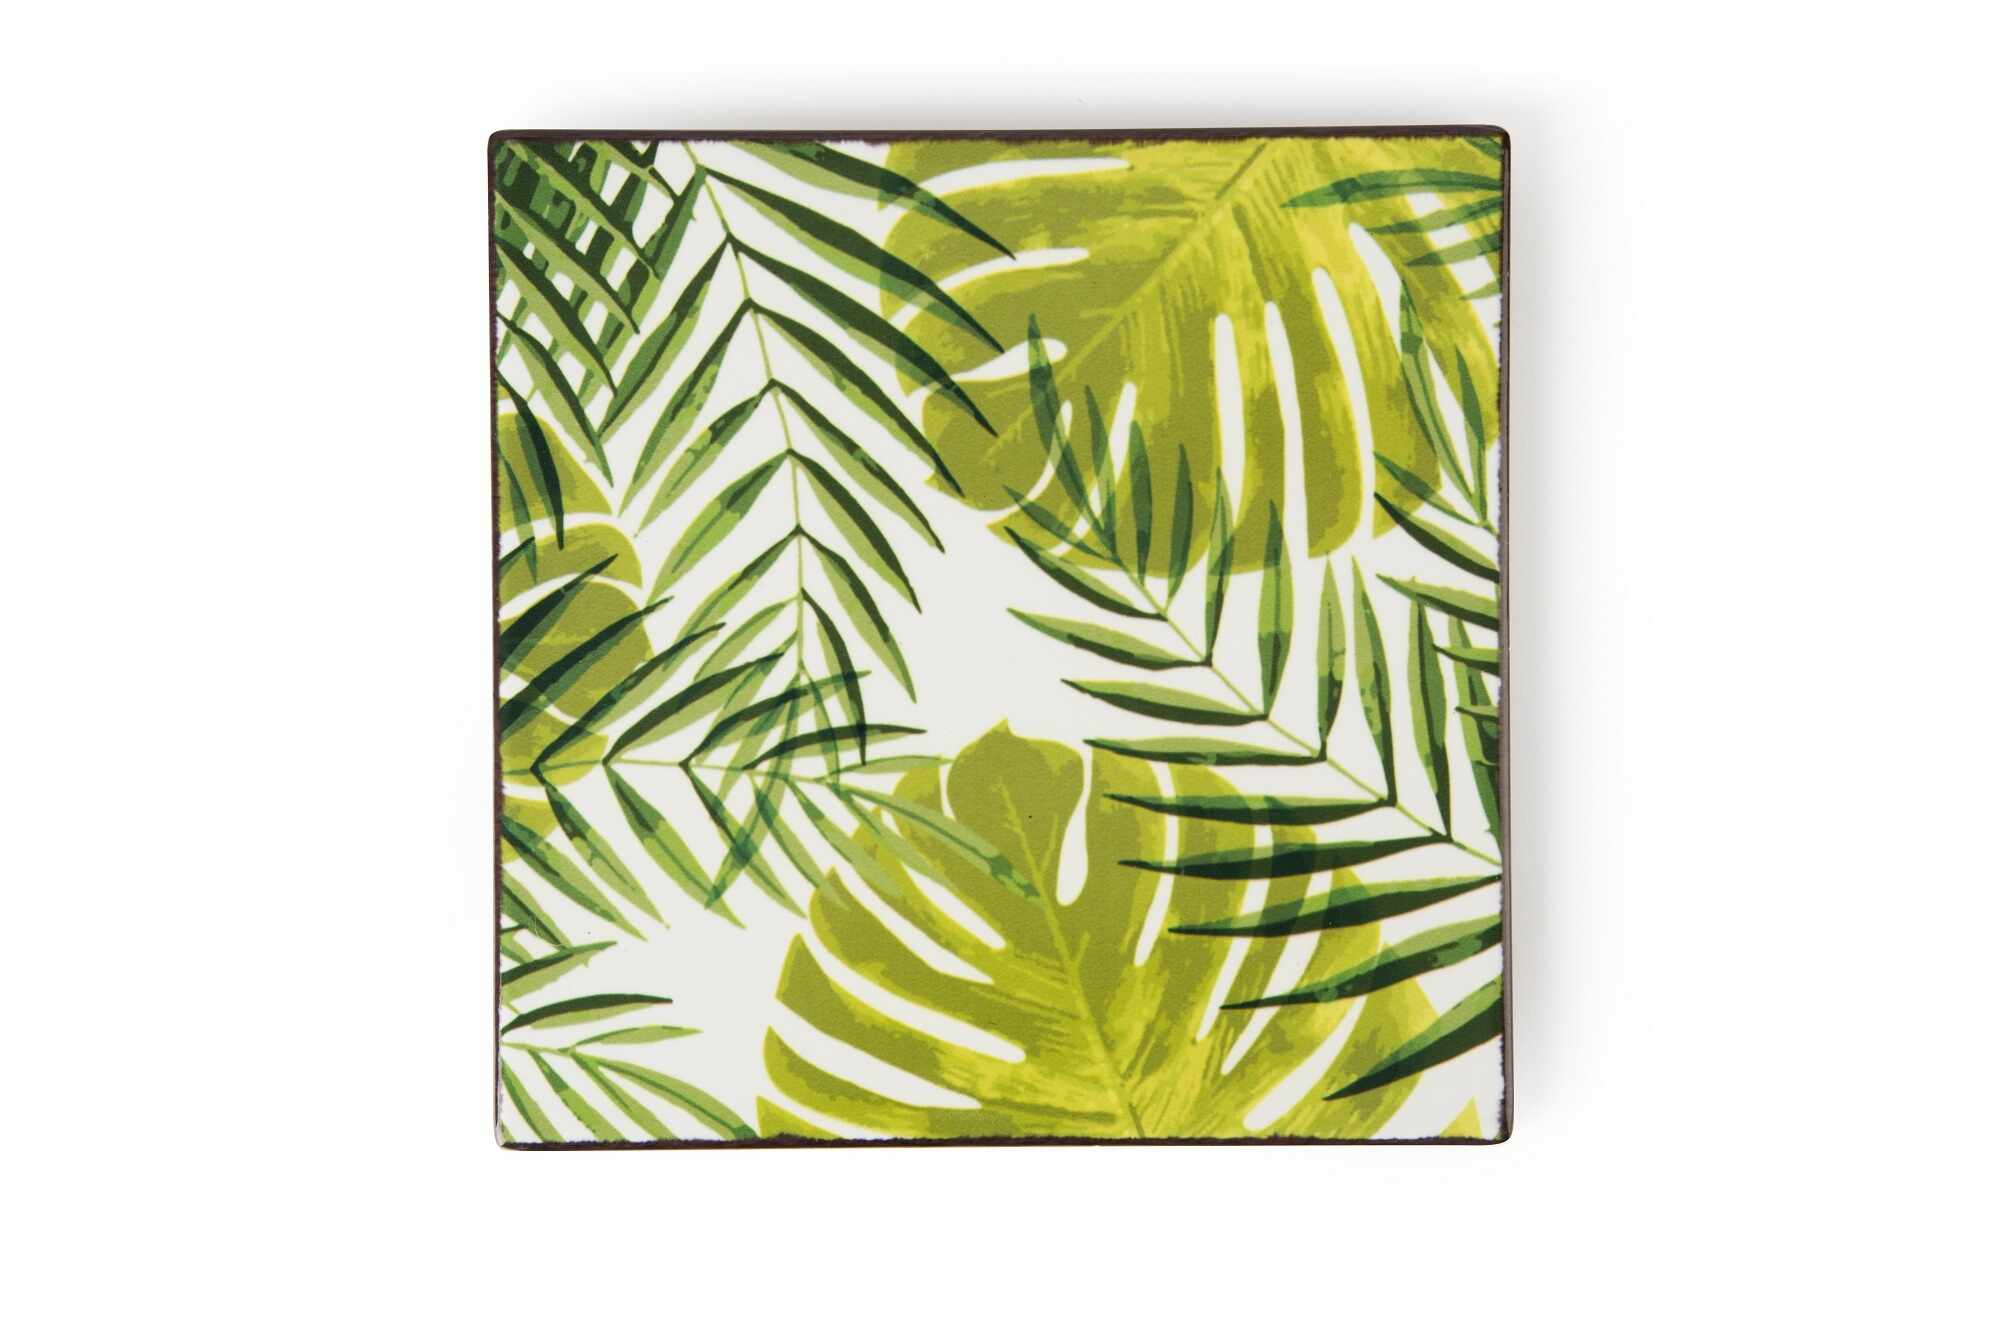 Suport pentru vase fierbinti, din ceramica si pluta, L15xl15 cm, Foliage Verde